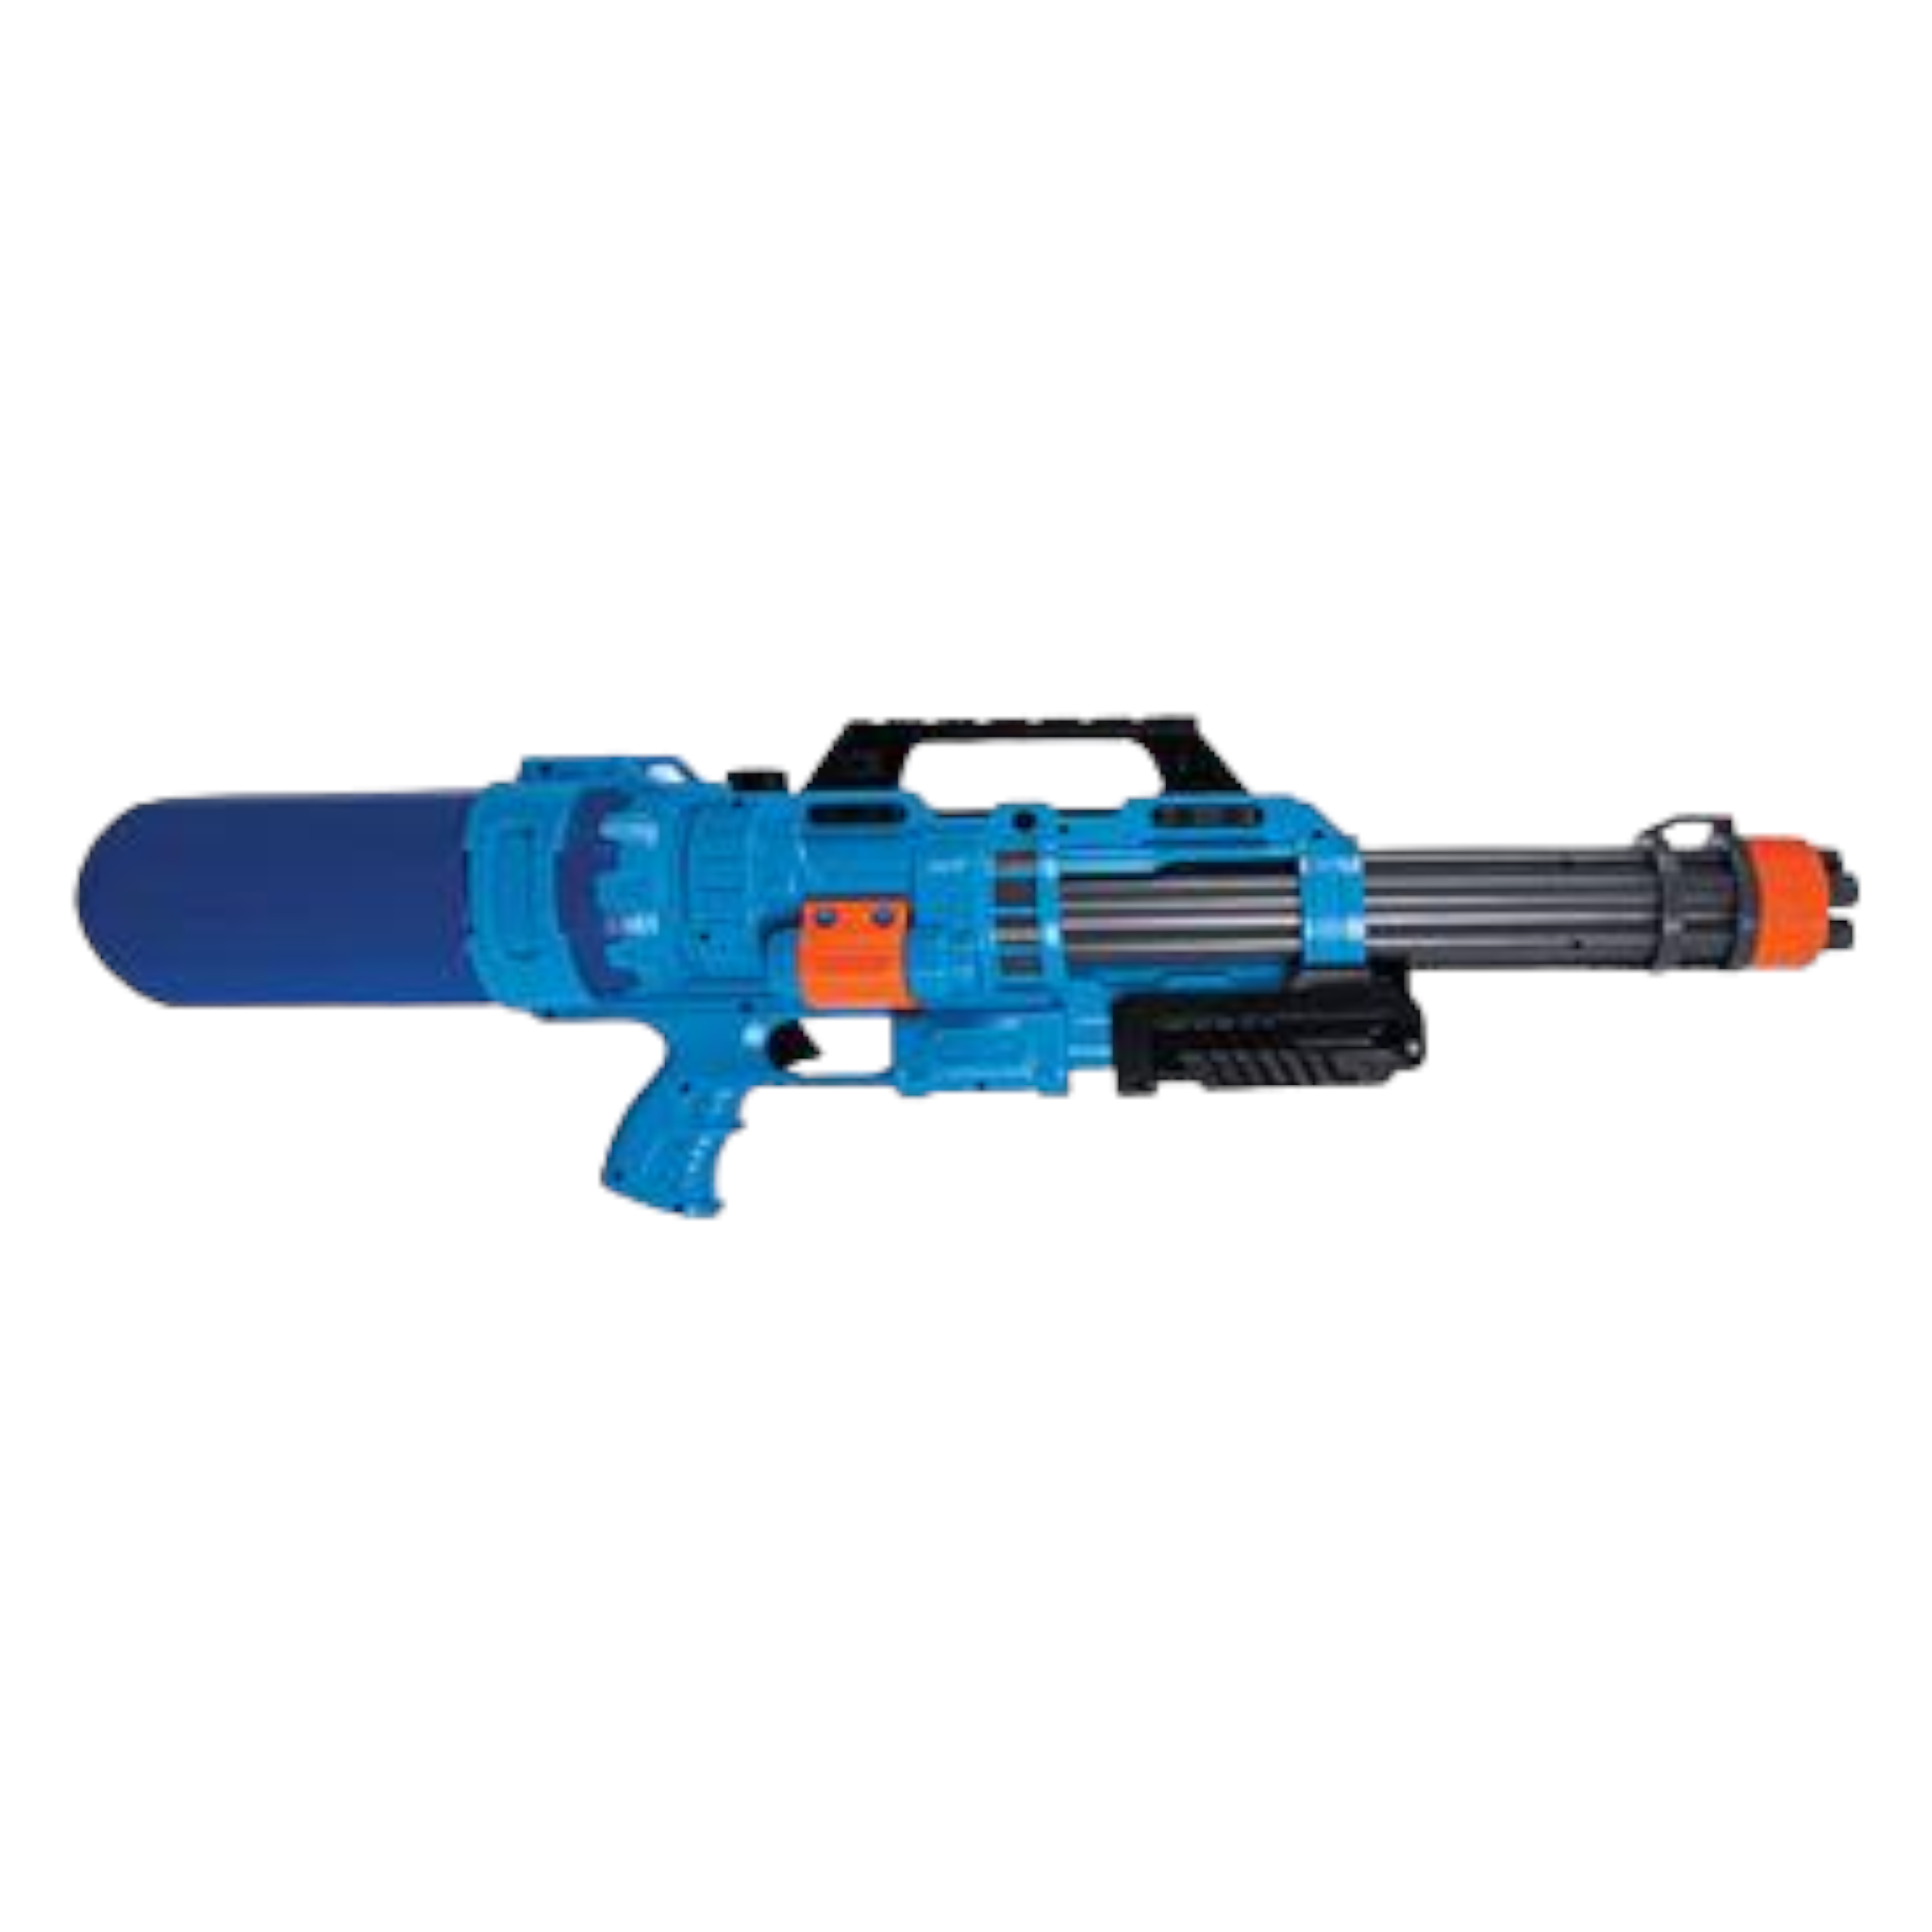 Water Gun Blaster 68cm Pump Action